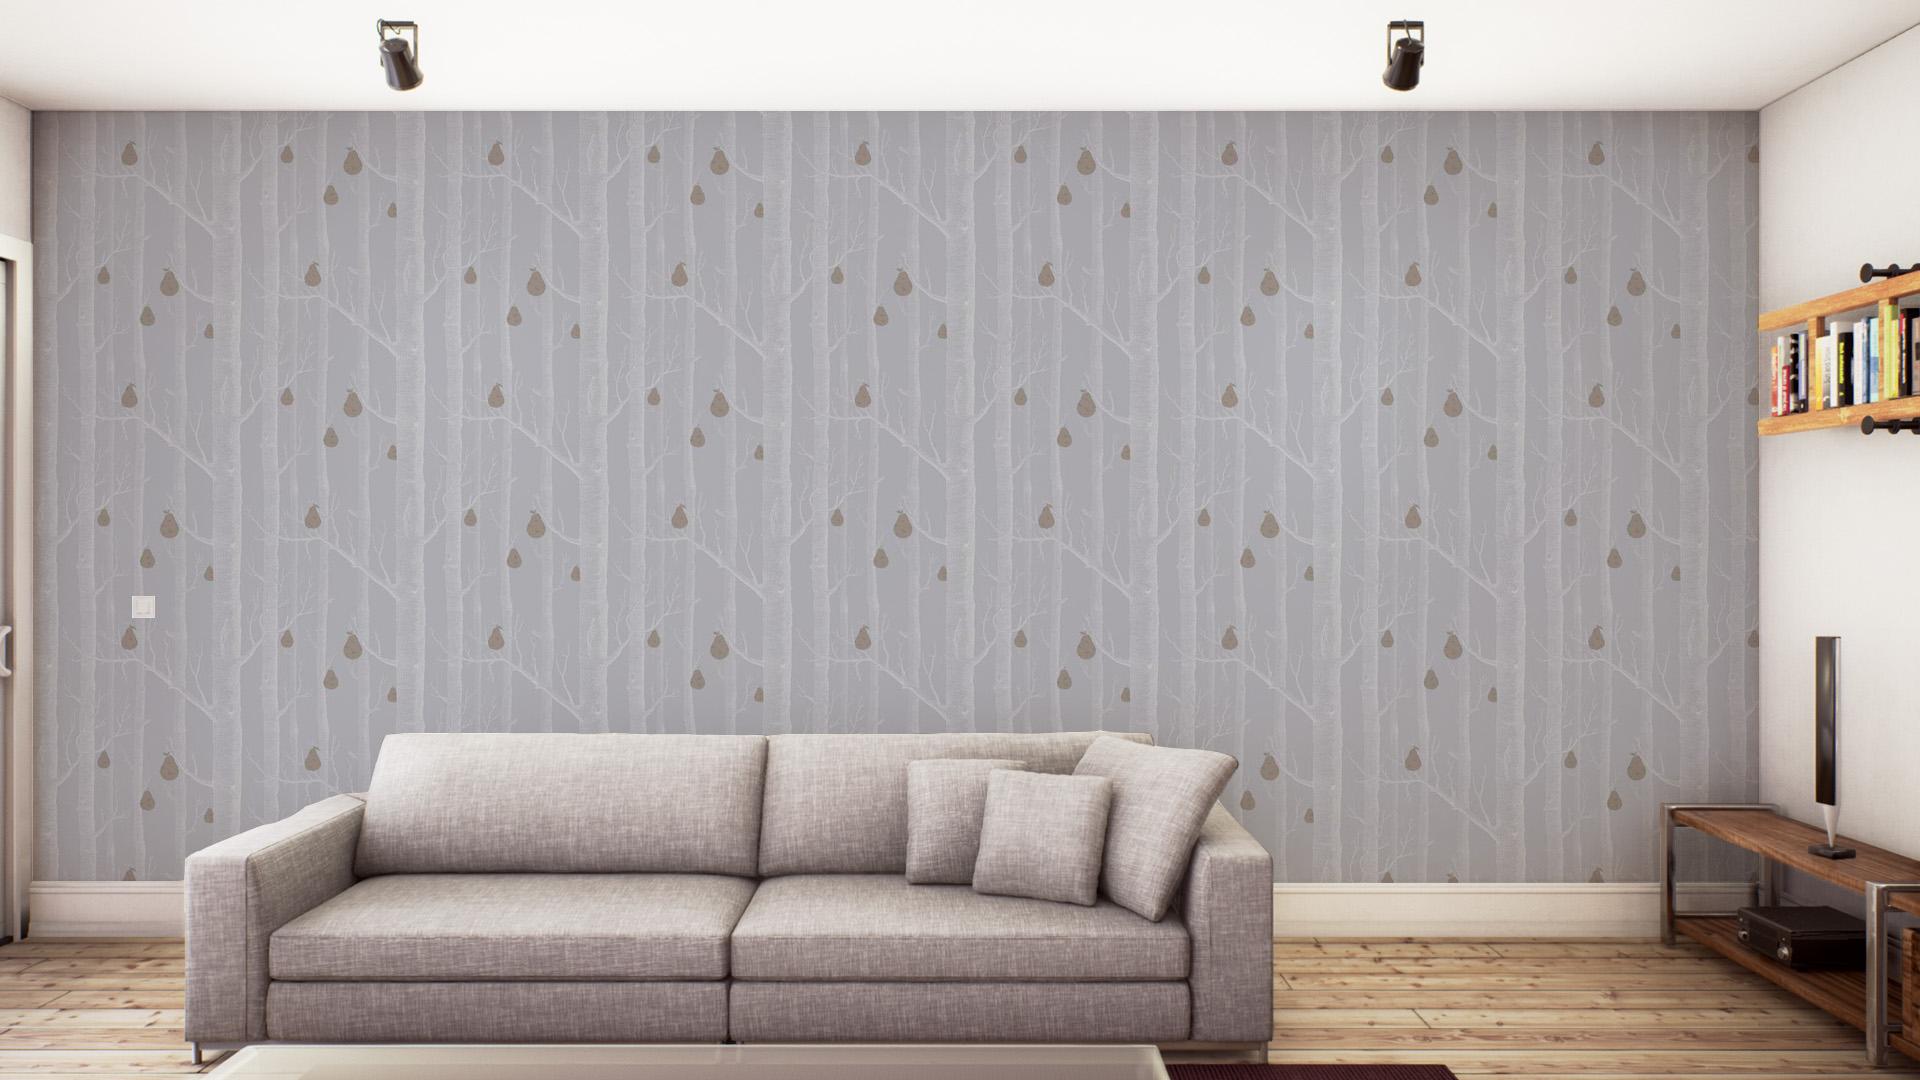 fondo de pantalla de maderas y peras,pared,fondo de pantalla,habitación,mueble,sofá